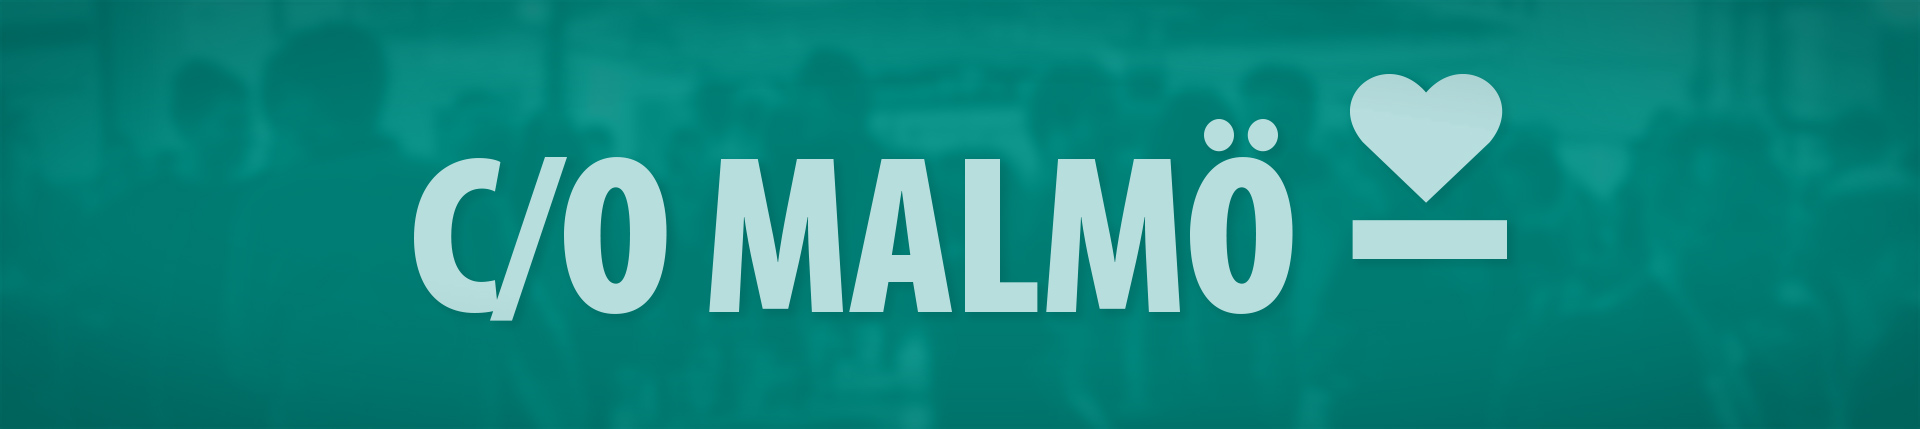 Bild med mörkgrön bakgrund och texten c/o Malmö i ljusare grönt. Efter texten följer ett tankestreck med ett hjärta ovanför.